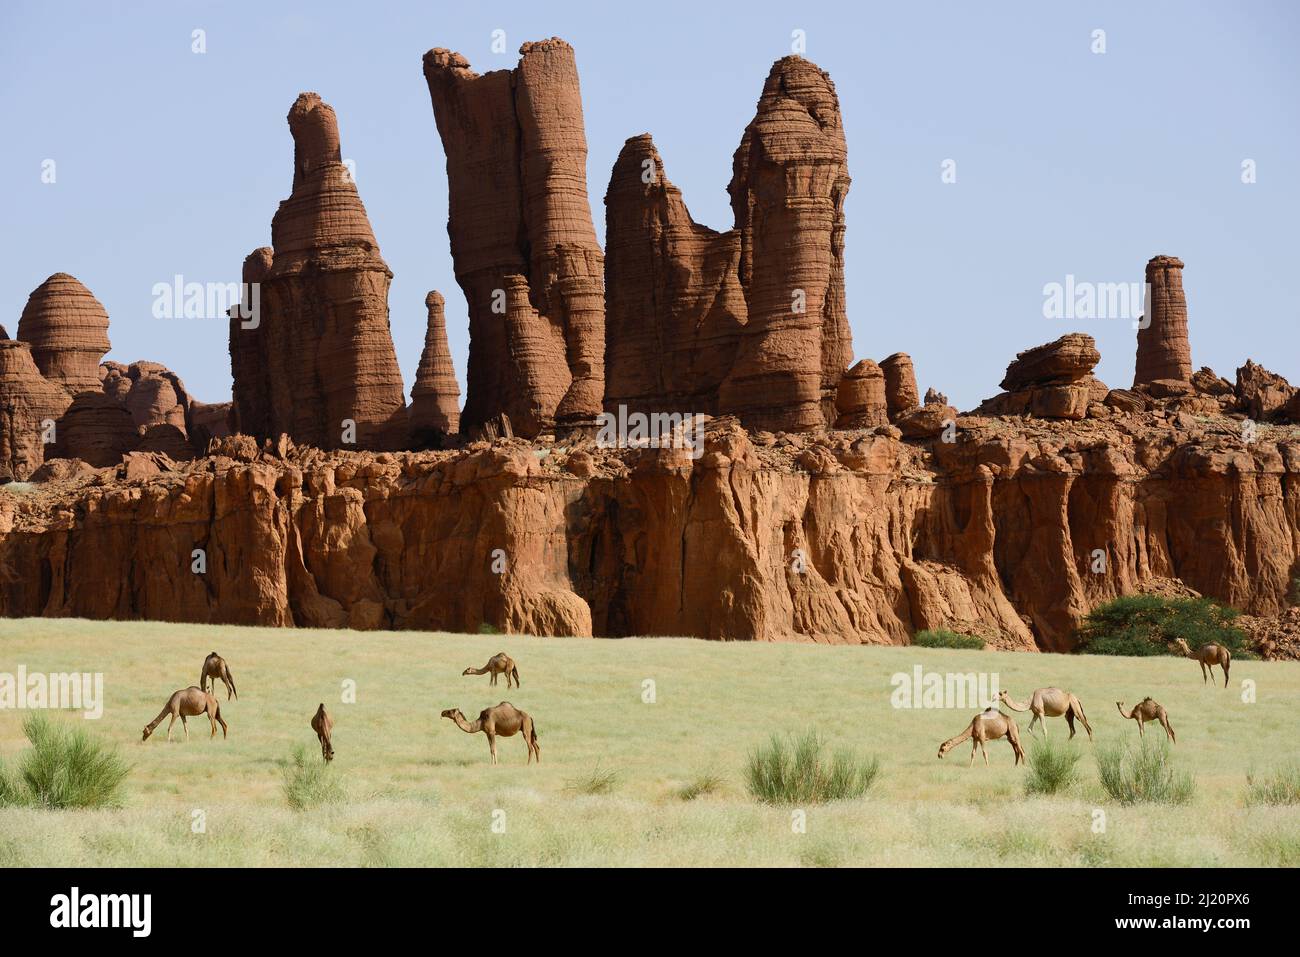 Formations rocheuses de grès érodées avec des chameaux de Dromedary (Camelus dromedarius) qui broutent sur de nouvelles herbes après les pluies du désert. Ennedi Rese naturel et culturel Banque D'Images